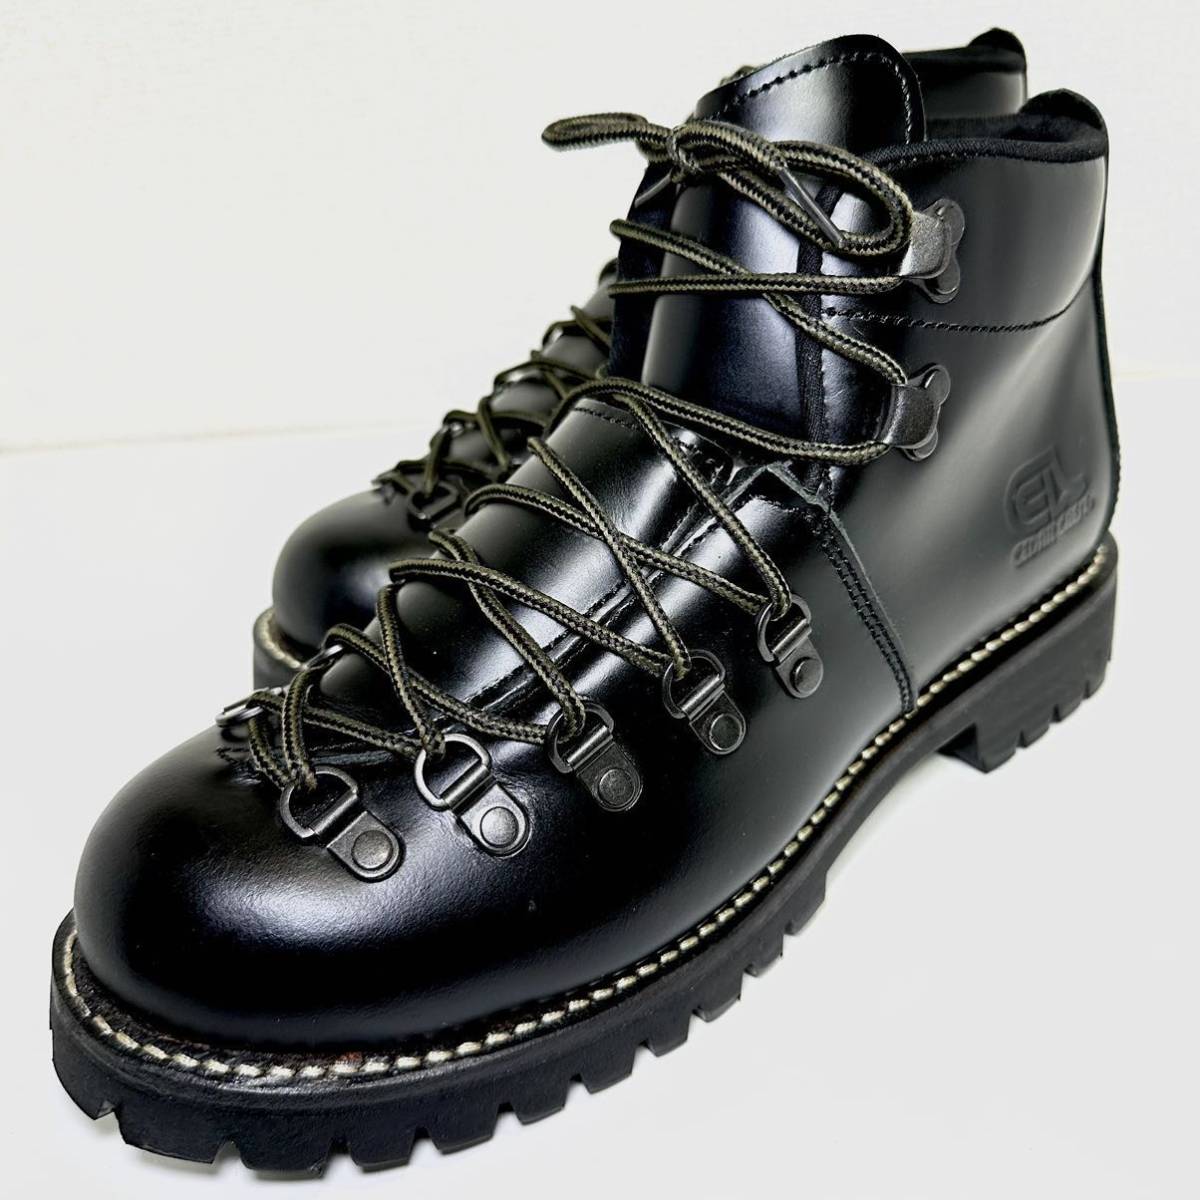 即決/試着程度/CEDAR CREST セダークレスト CC-1574 ワークブーツ US 8 26.0cm メンズ スニーカー 靴/革靴/カジュアル/ブラック/黒